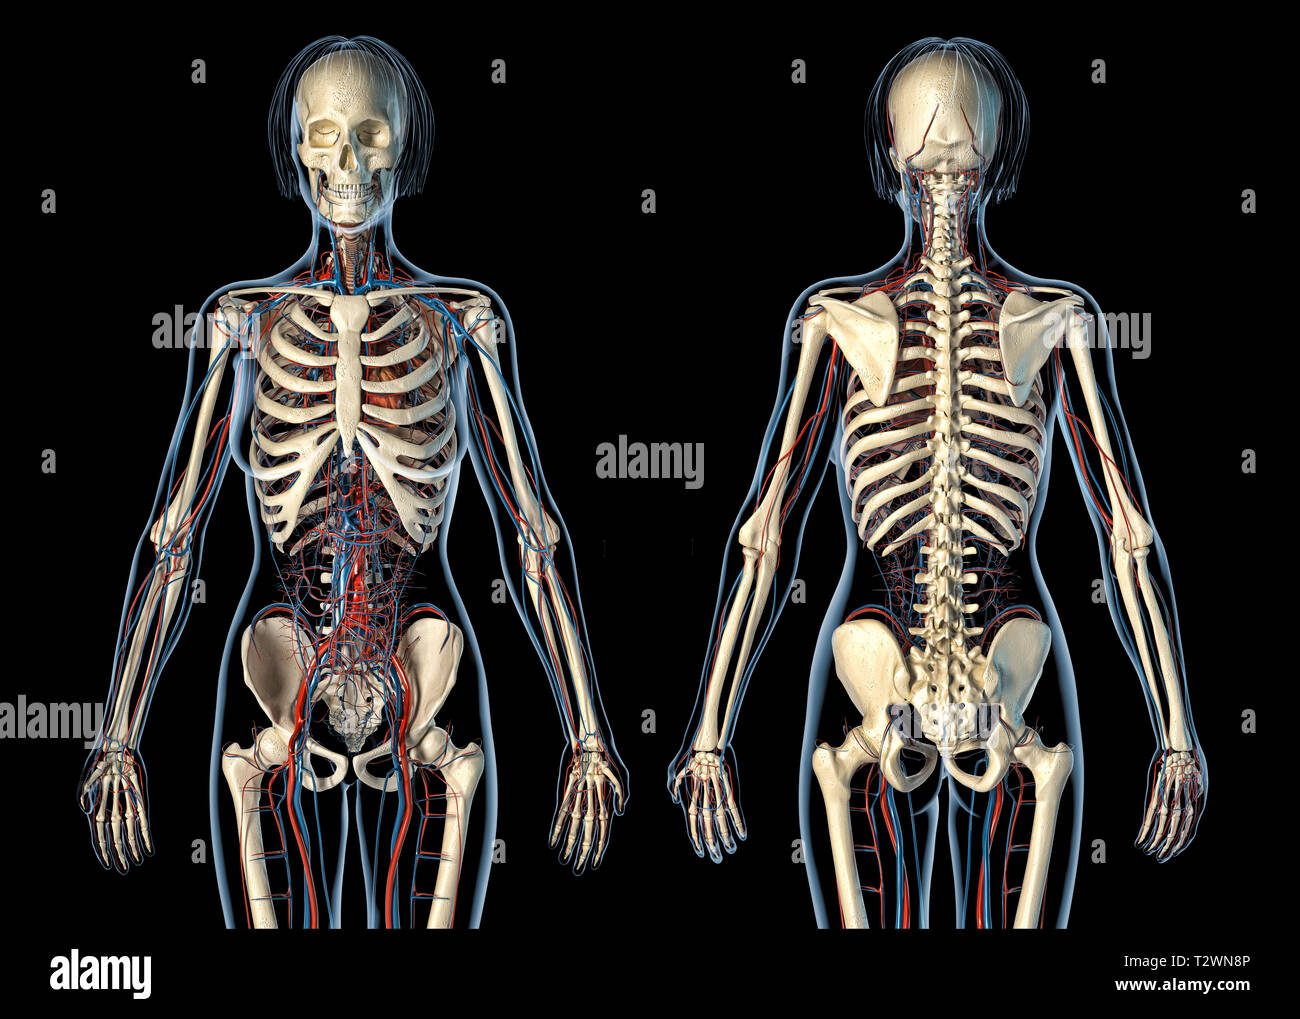 Frau Anatomie Herz-Kreislauf-System mit Skelett, hinten und vorne. Auf schwarzem Hintergrund. Stockfoto